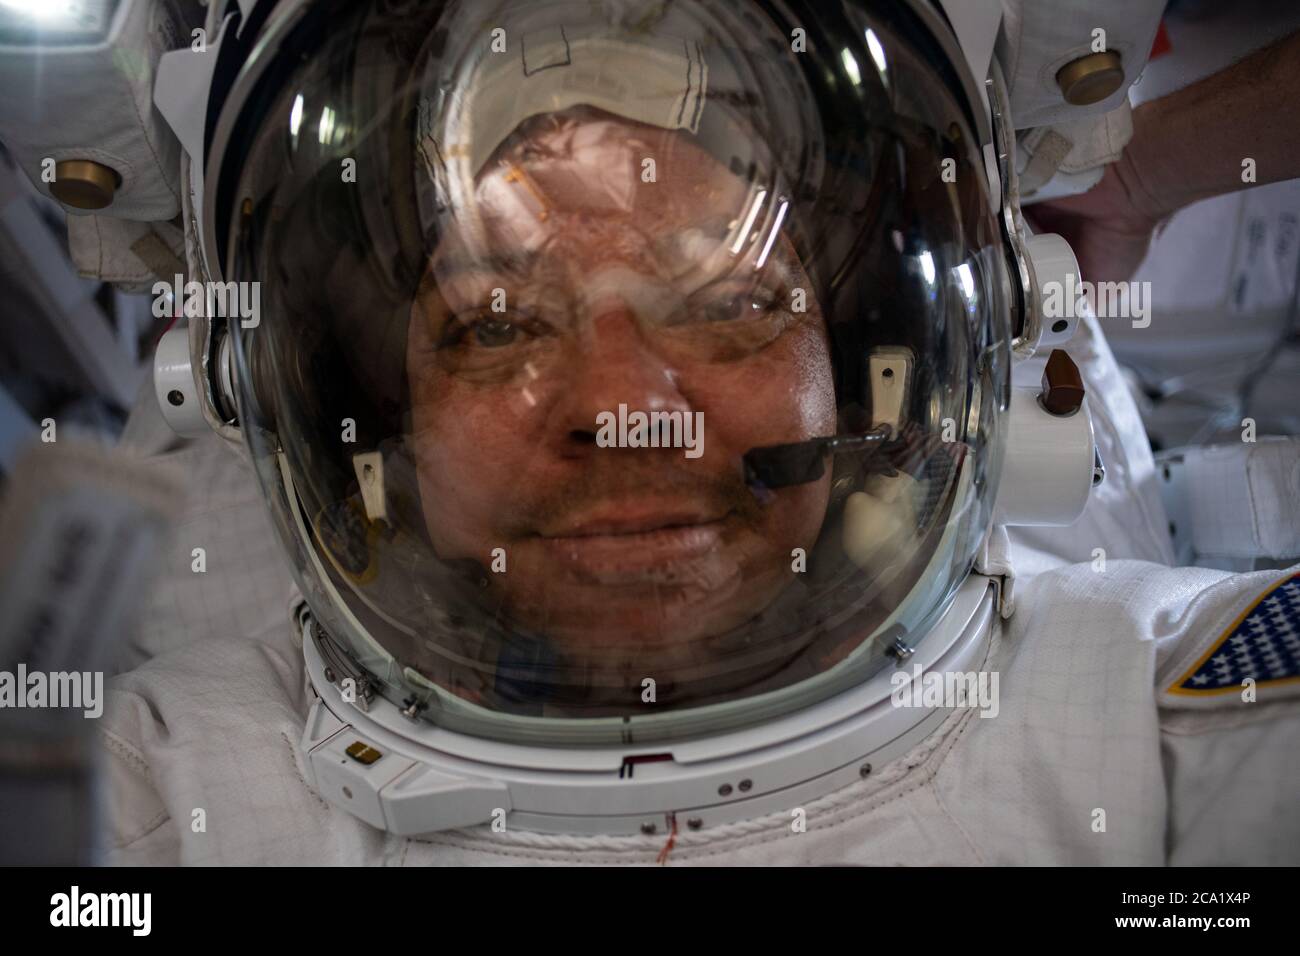 L'astronauta della NASA Bob Behnken prende un selfie nel suo spacesuit durante una passerella fuori dalla Stazione spaziale Internazionale 21 luglio 2020 a Earth Orbit. Foto Stock